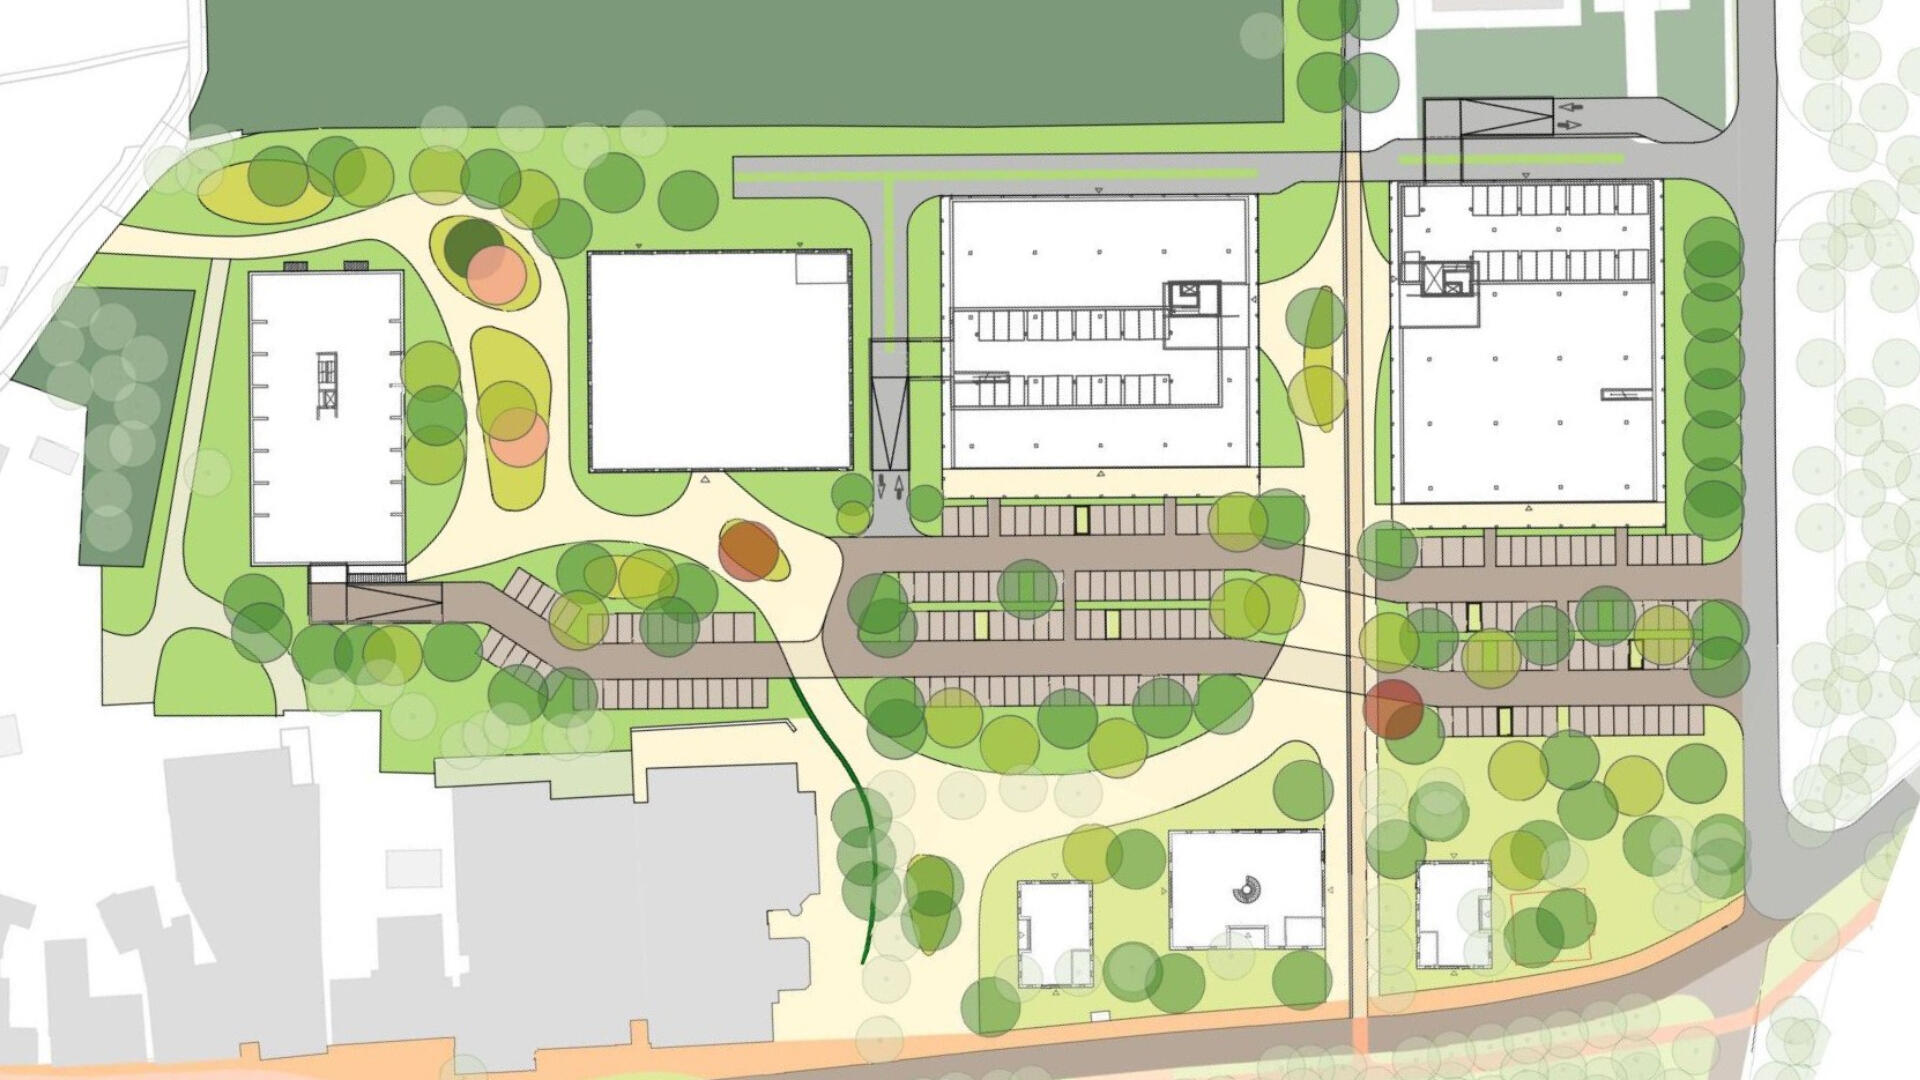 Een plattegrond van het toekomstige PBH terrein. Een terrein met ruimte voor woningen en winkels. Op de plattegrond is er vooral aandacht voor de parkeergarages